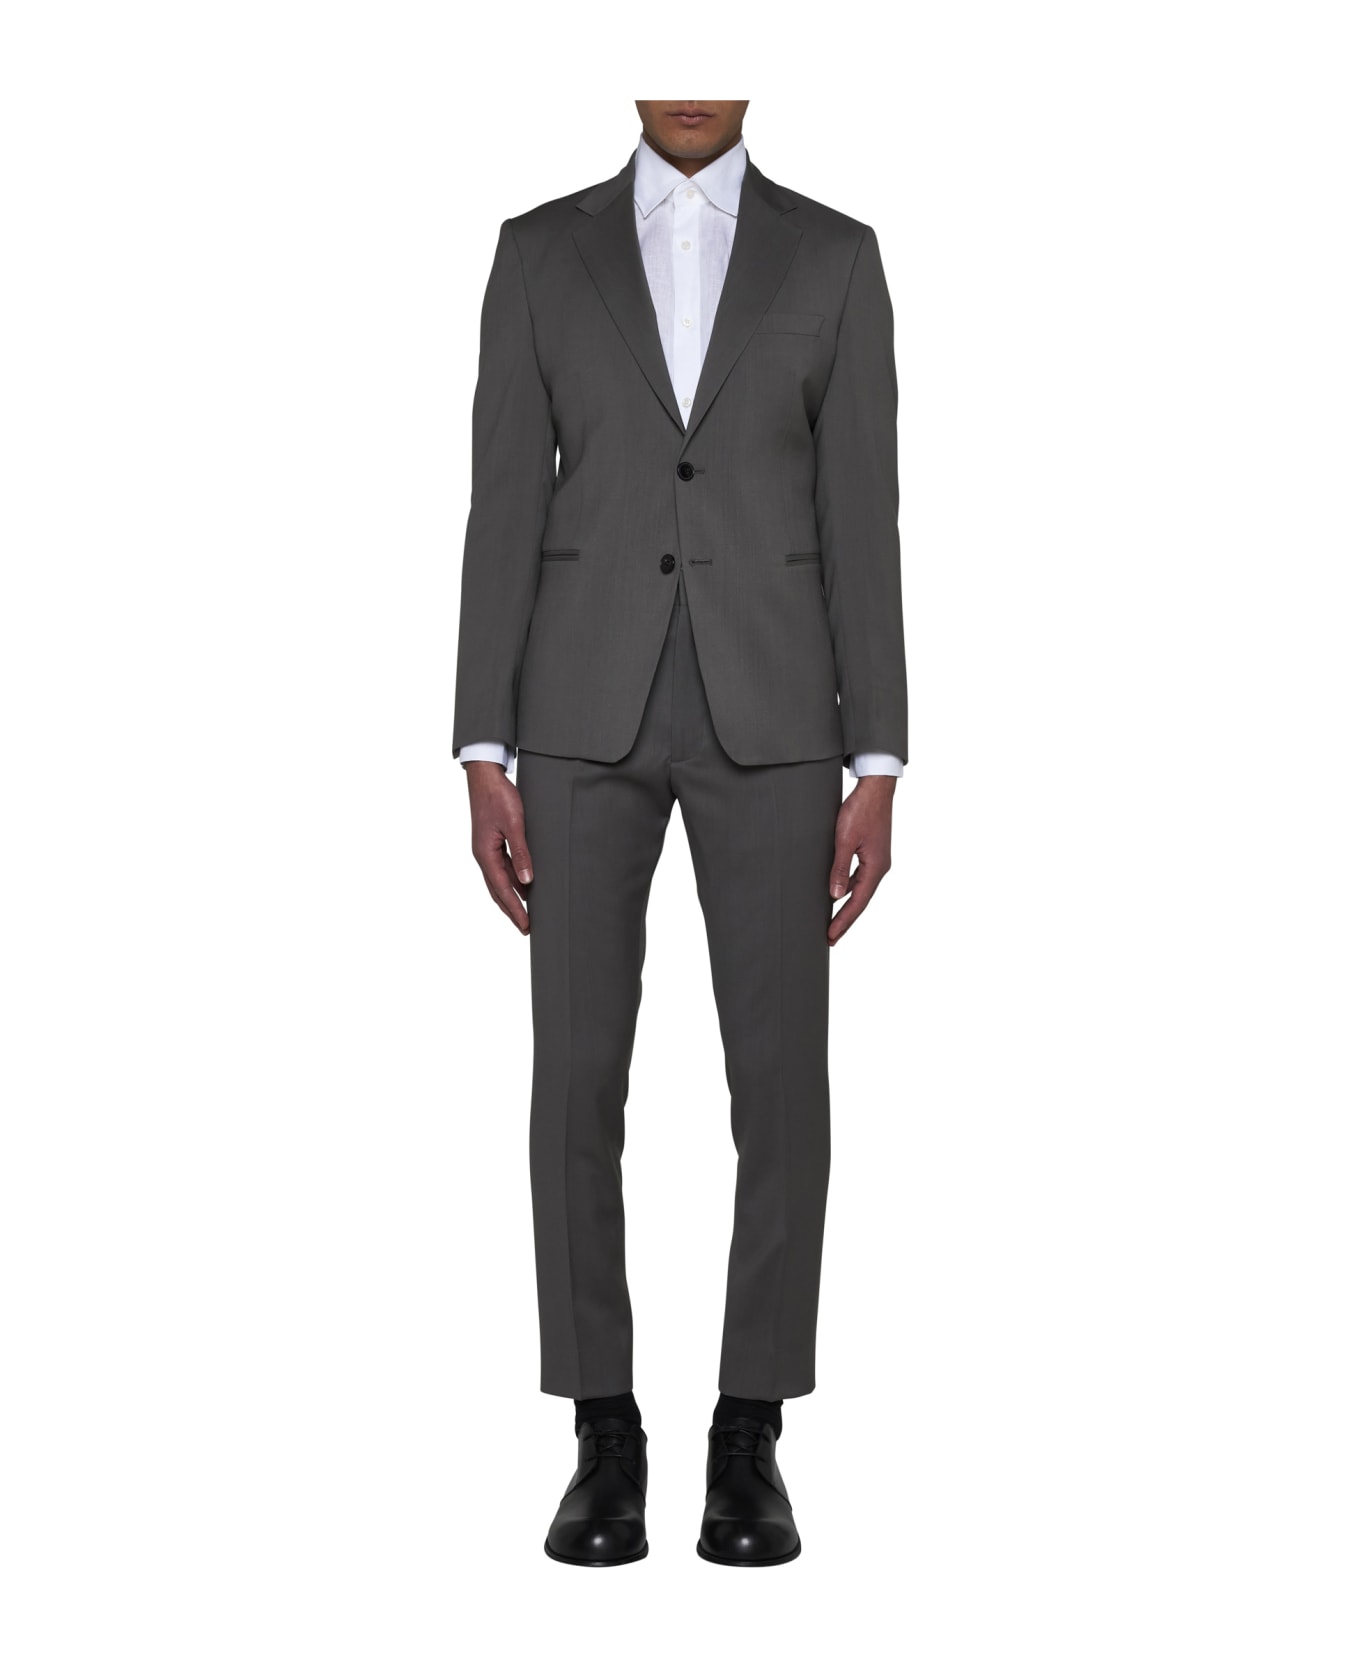 Low Brand Suit - Bracco スーツ